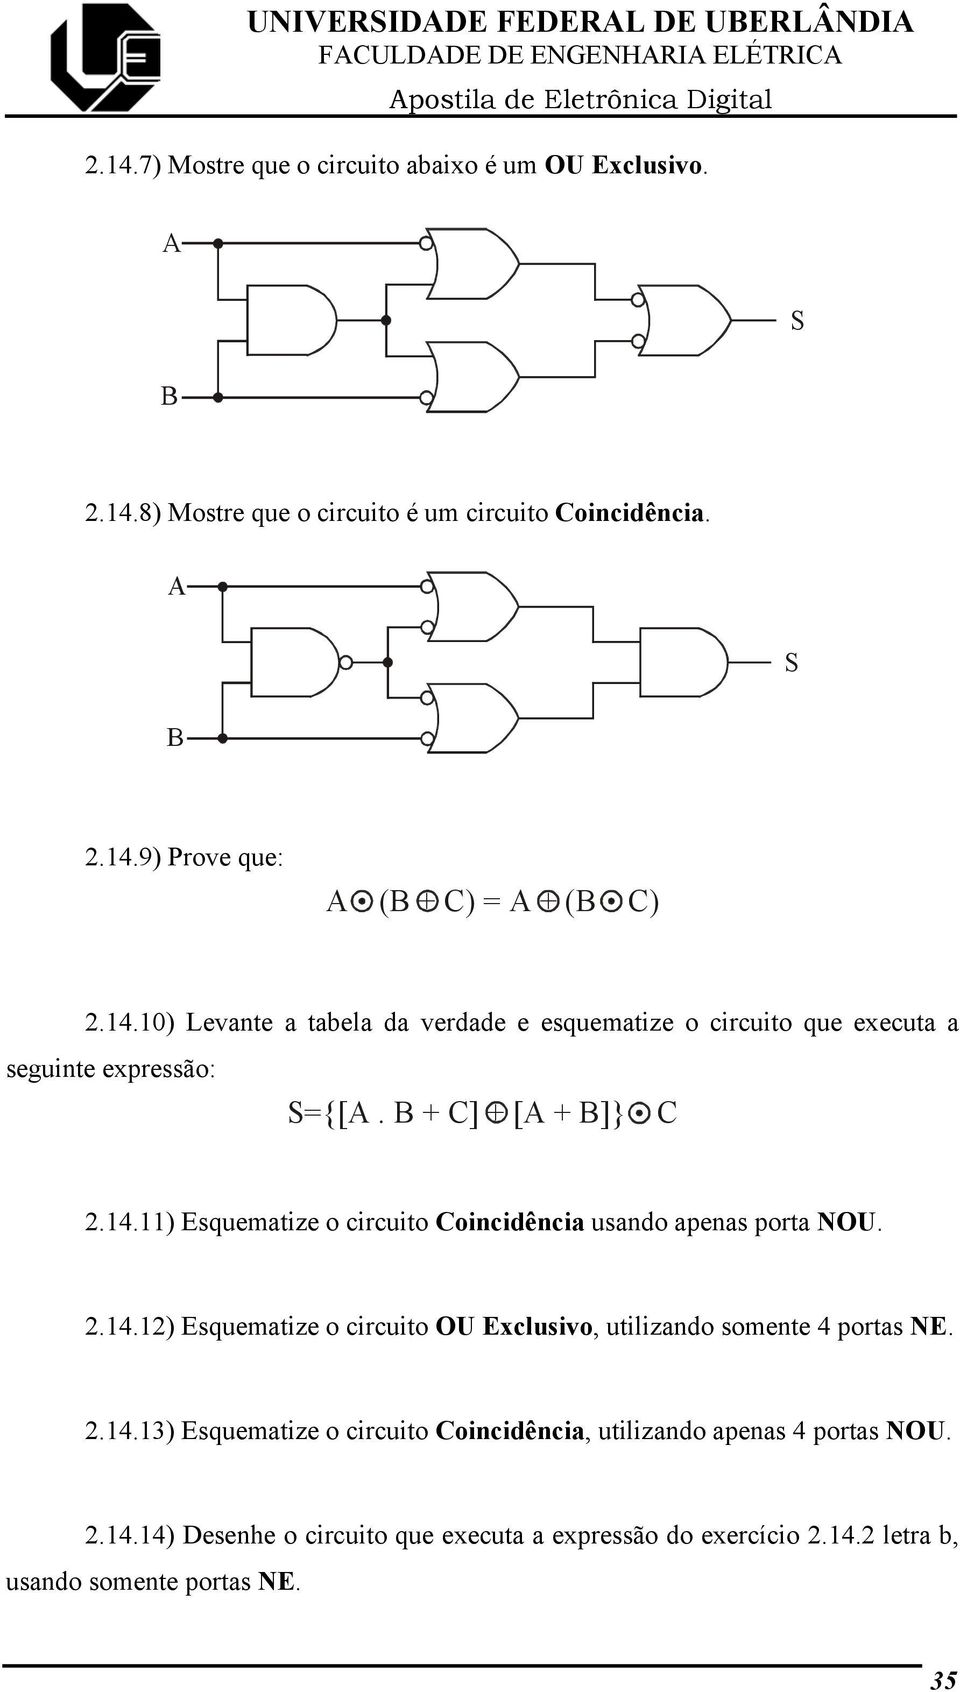 2.14.12) Esquematize o circuito OU Exclusivo, utilizando somente 4 portas NE. 2.14.13) Esquematize o circuito Coincidência, utilizando apenas 4 portas NOU. 2.14.14) Desenhe o circuito que executa a expressão do exercício 2.